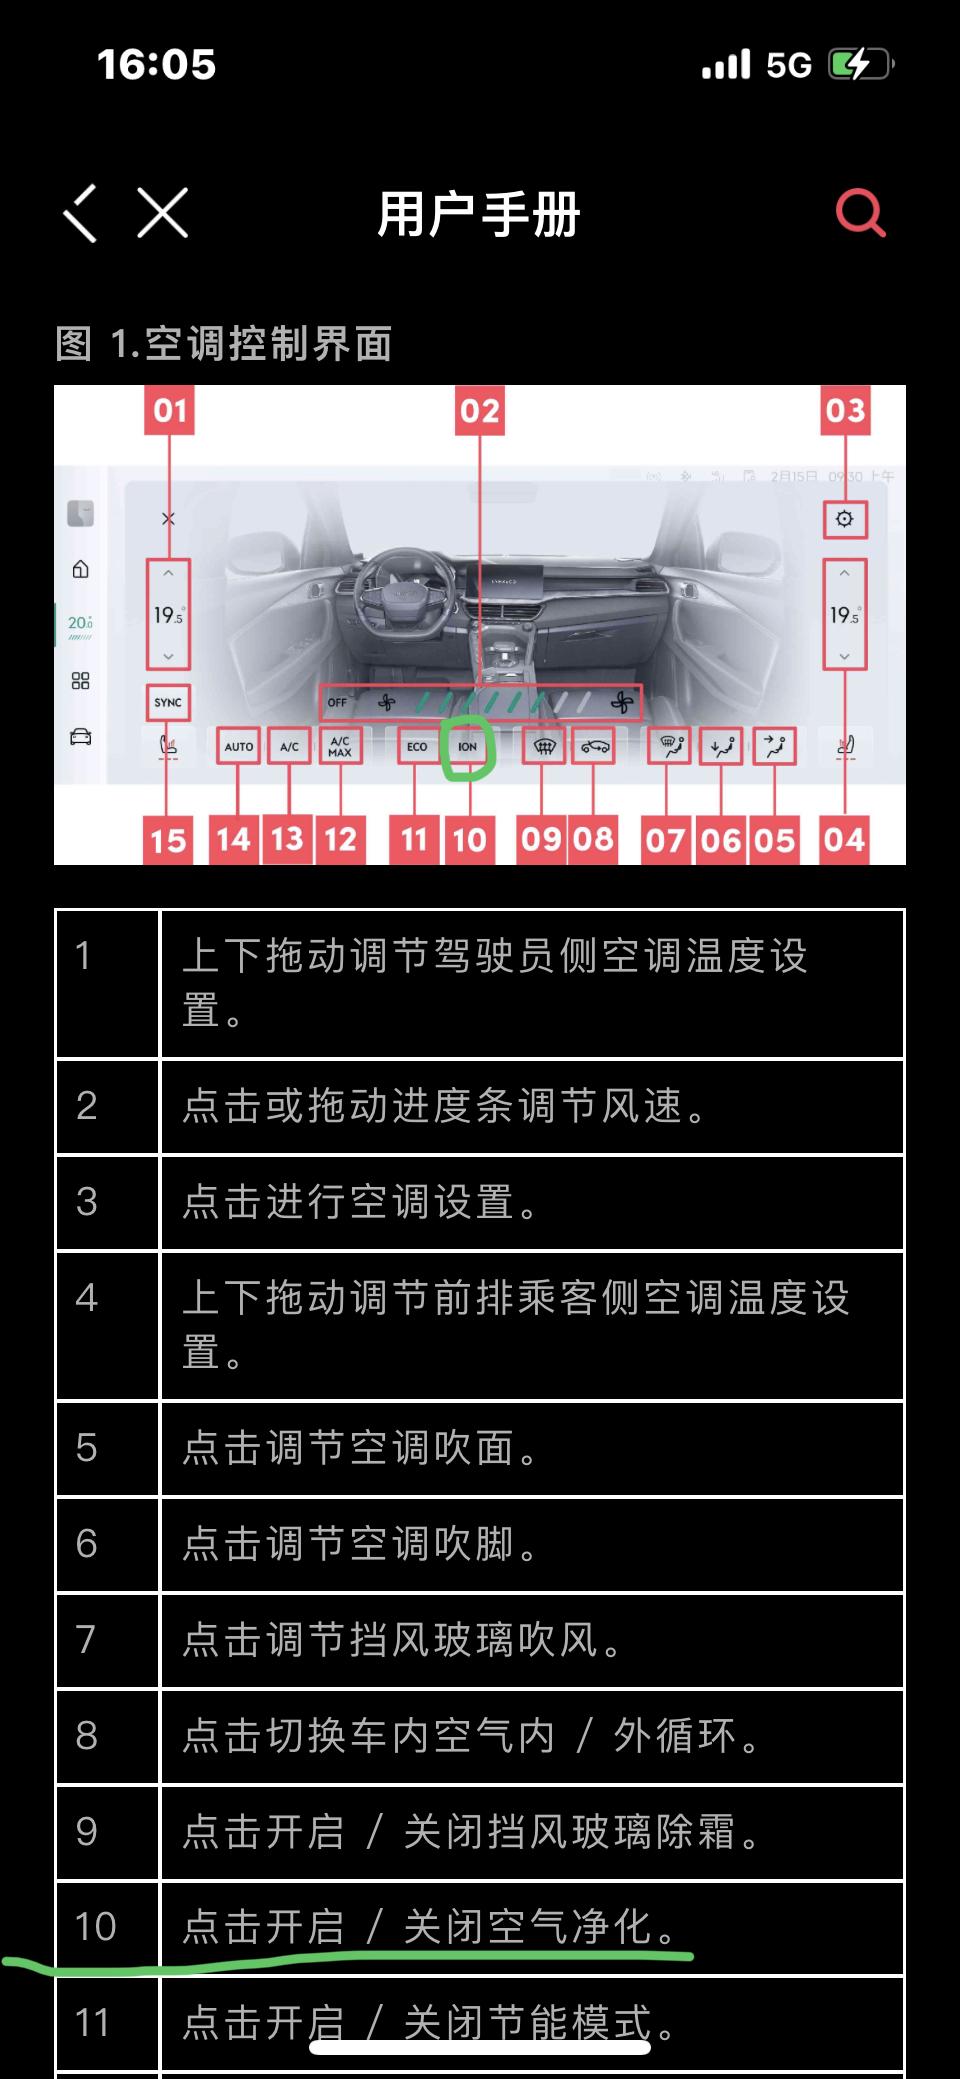 领克06 2023款06劲pro的中控显示屏少了空气净化开关，如图，是不是新车没有升级还是本来就没有？但在app的用户手